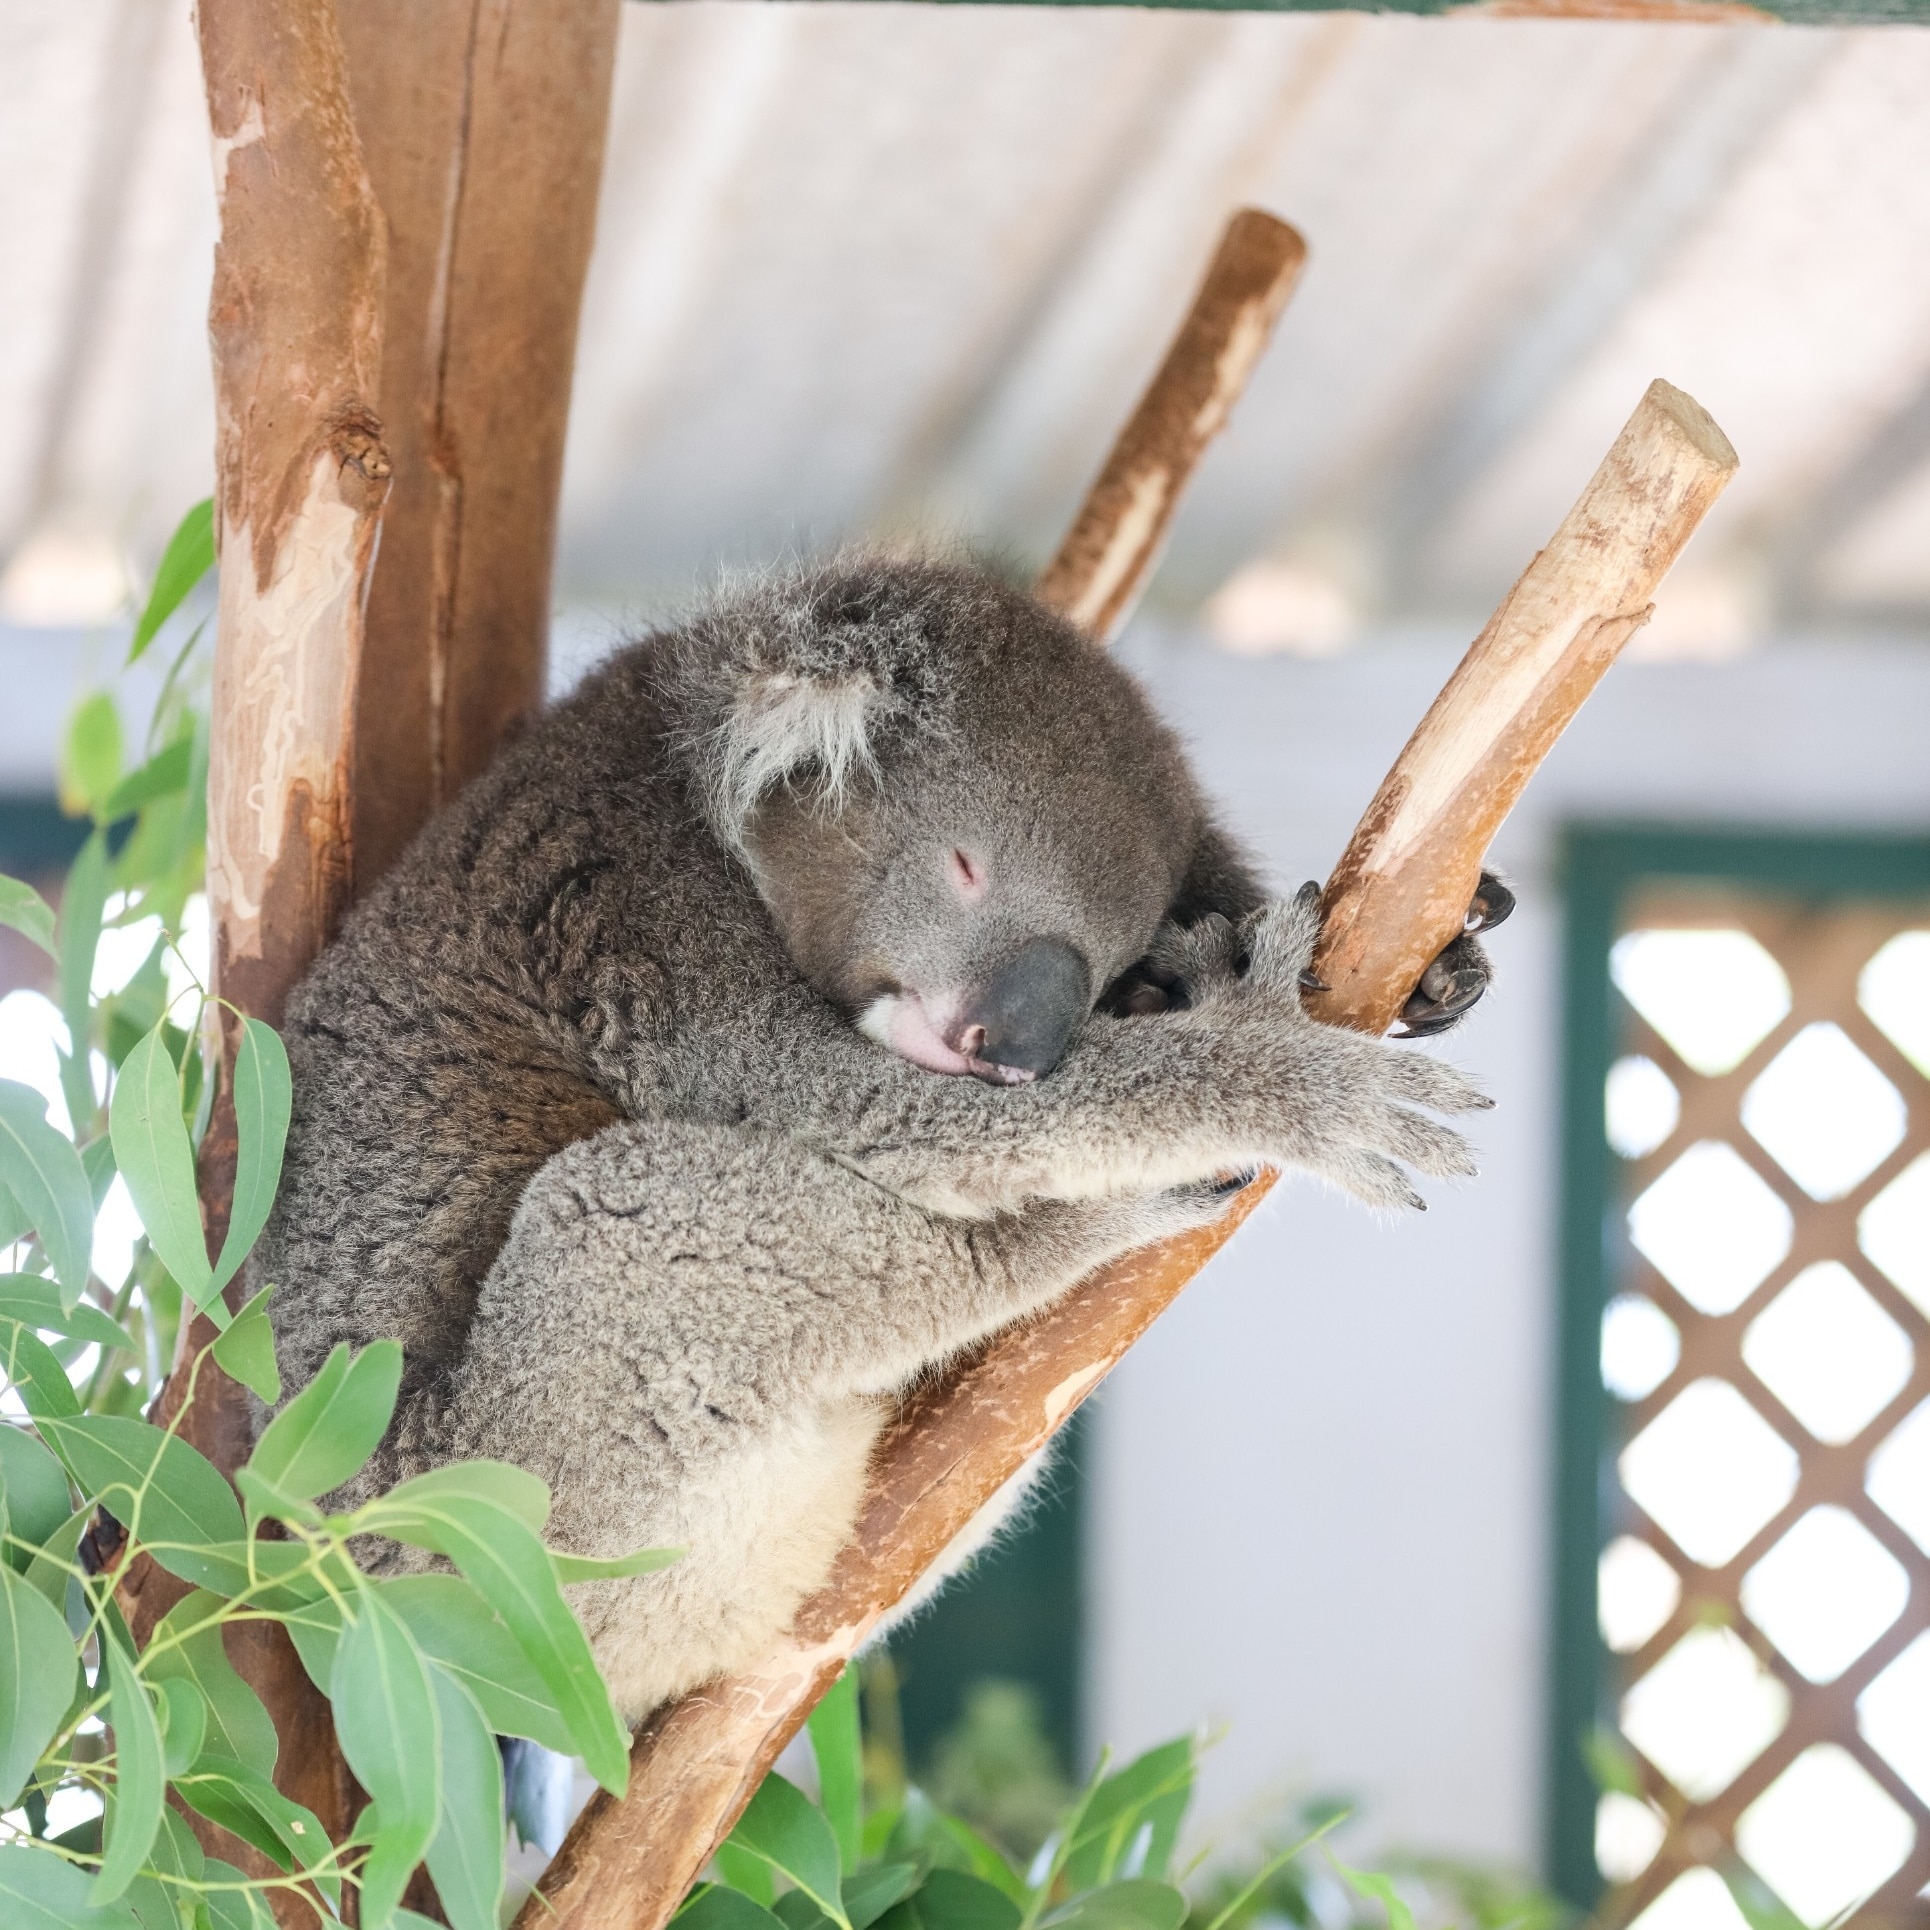 페더데일 야생동물 공원에서 코알라의 모습, 둔사이드, 뉴사우스웨일스 © 뉴사우스웨일스 관광청